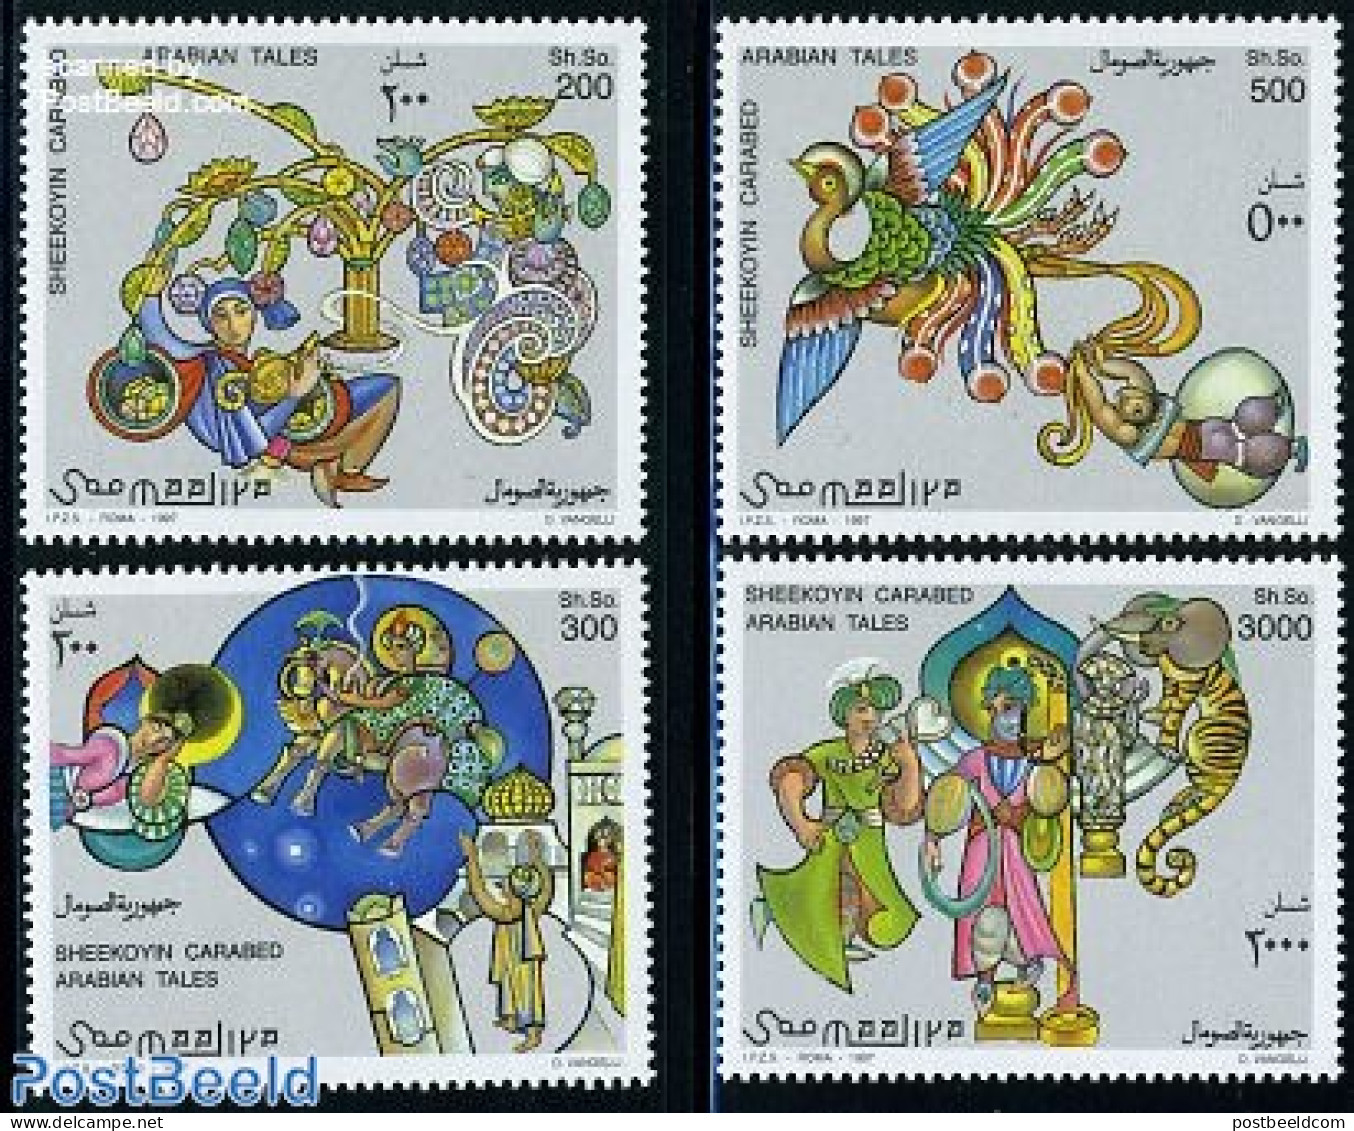 Somalia 1997 Arab Fairy Tales 4v, Mint NH, Art - Fairytales - Märchen, Sagen & Legenden